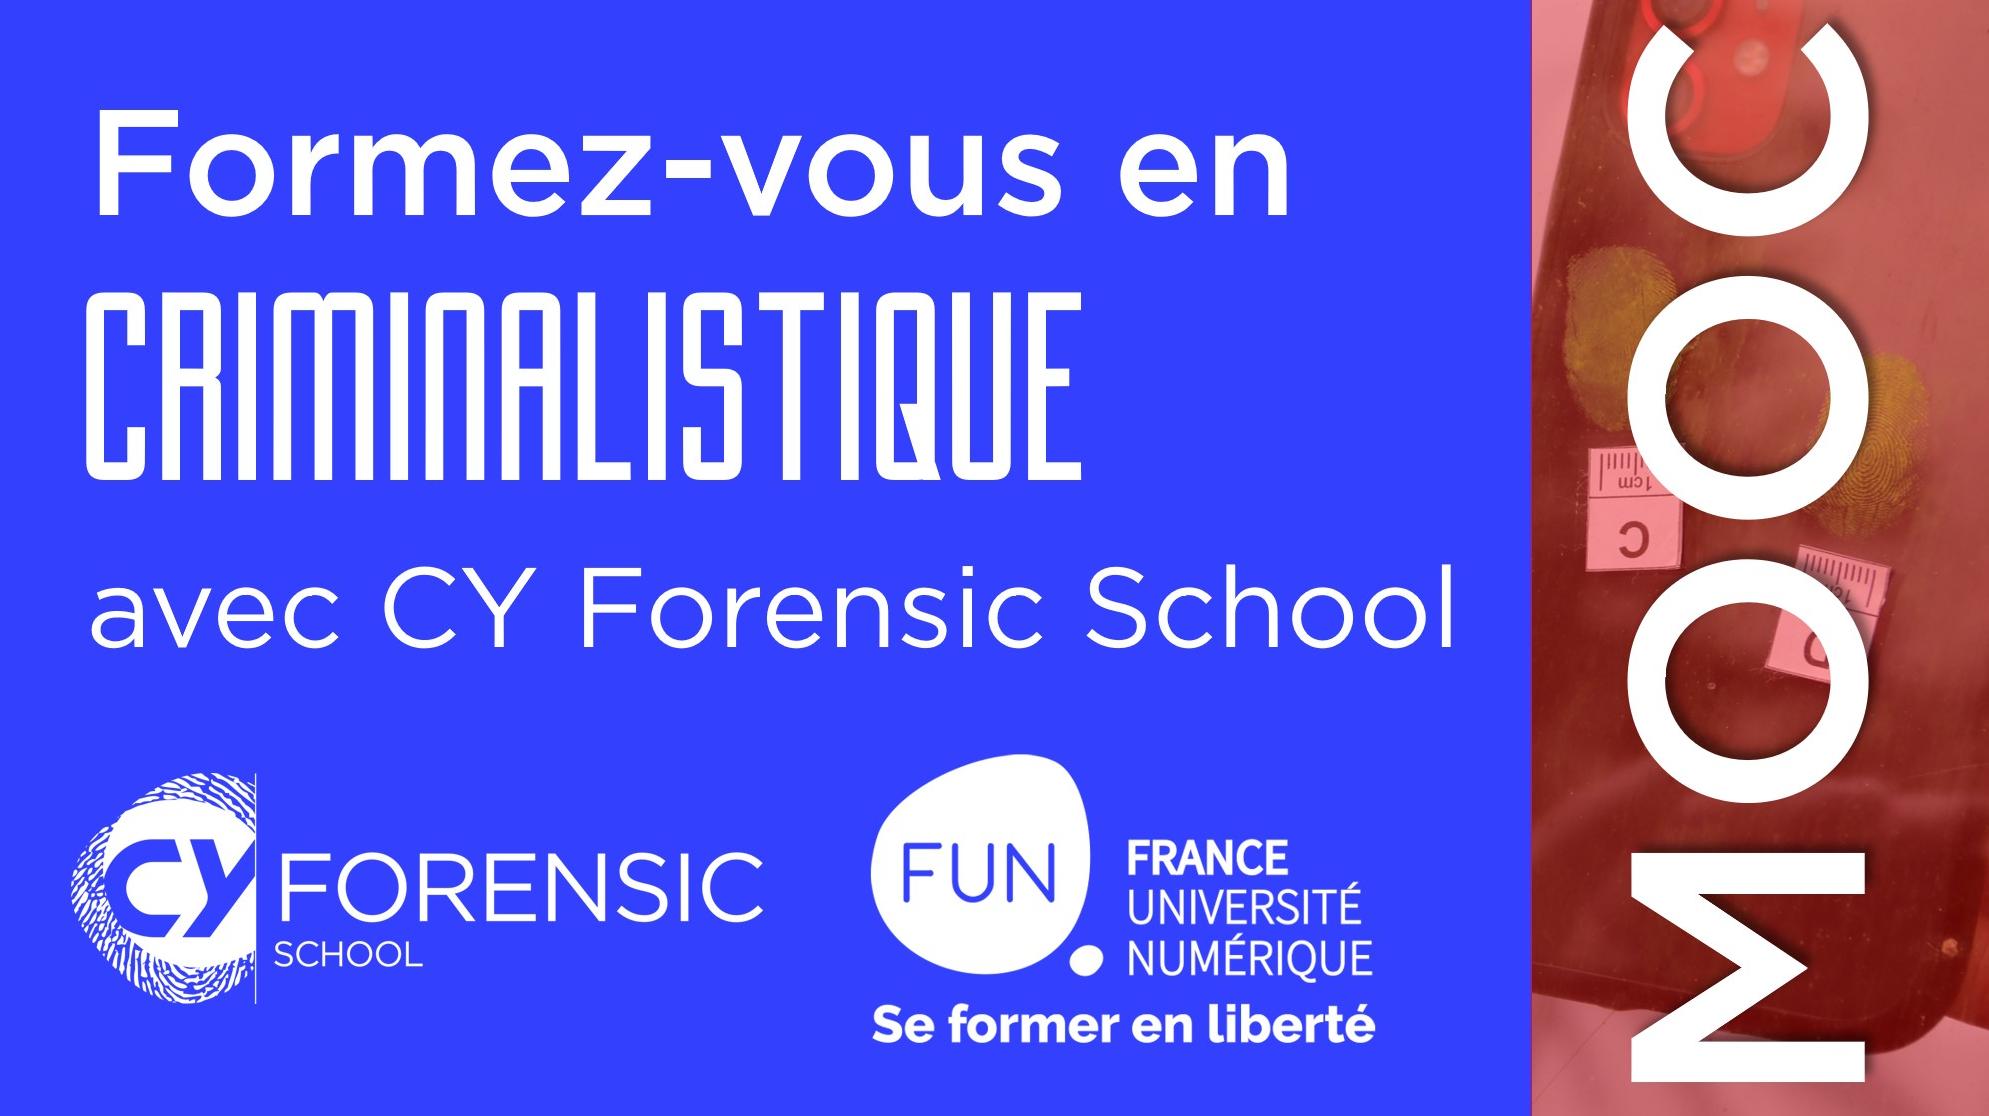 [MOOC] Inscriptions ouvertes : Formez-vous en criminalistique avec CY Forensic School !